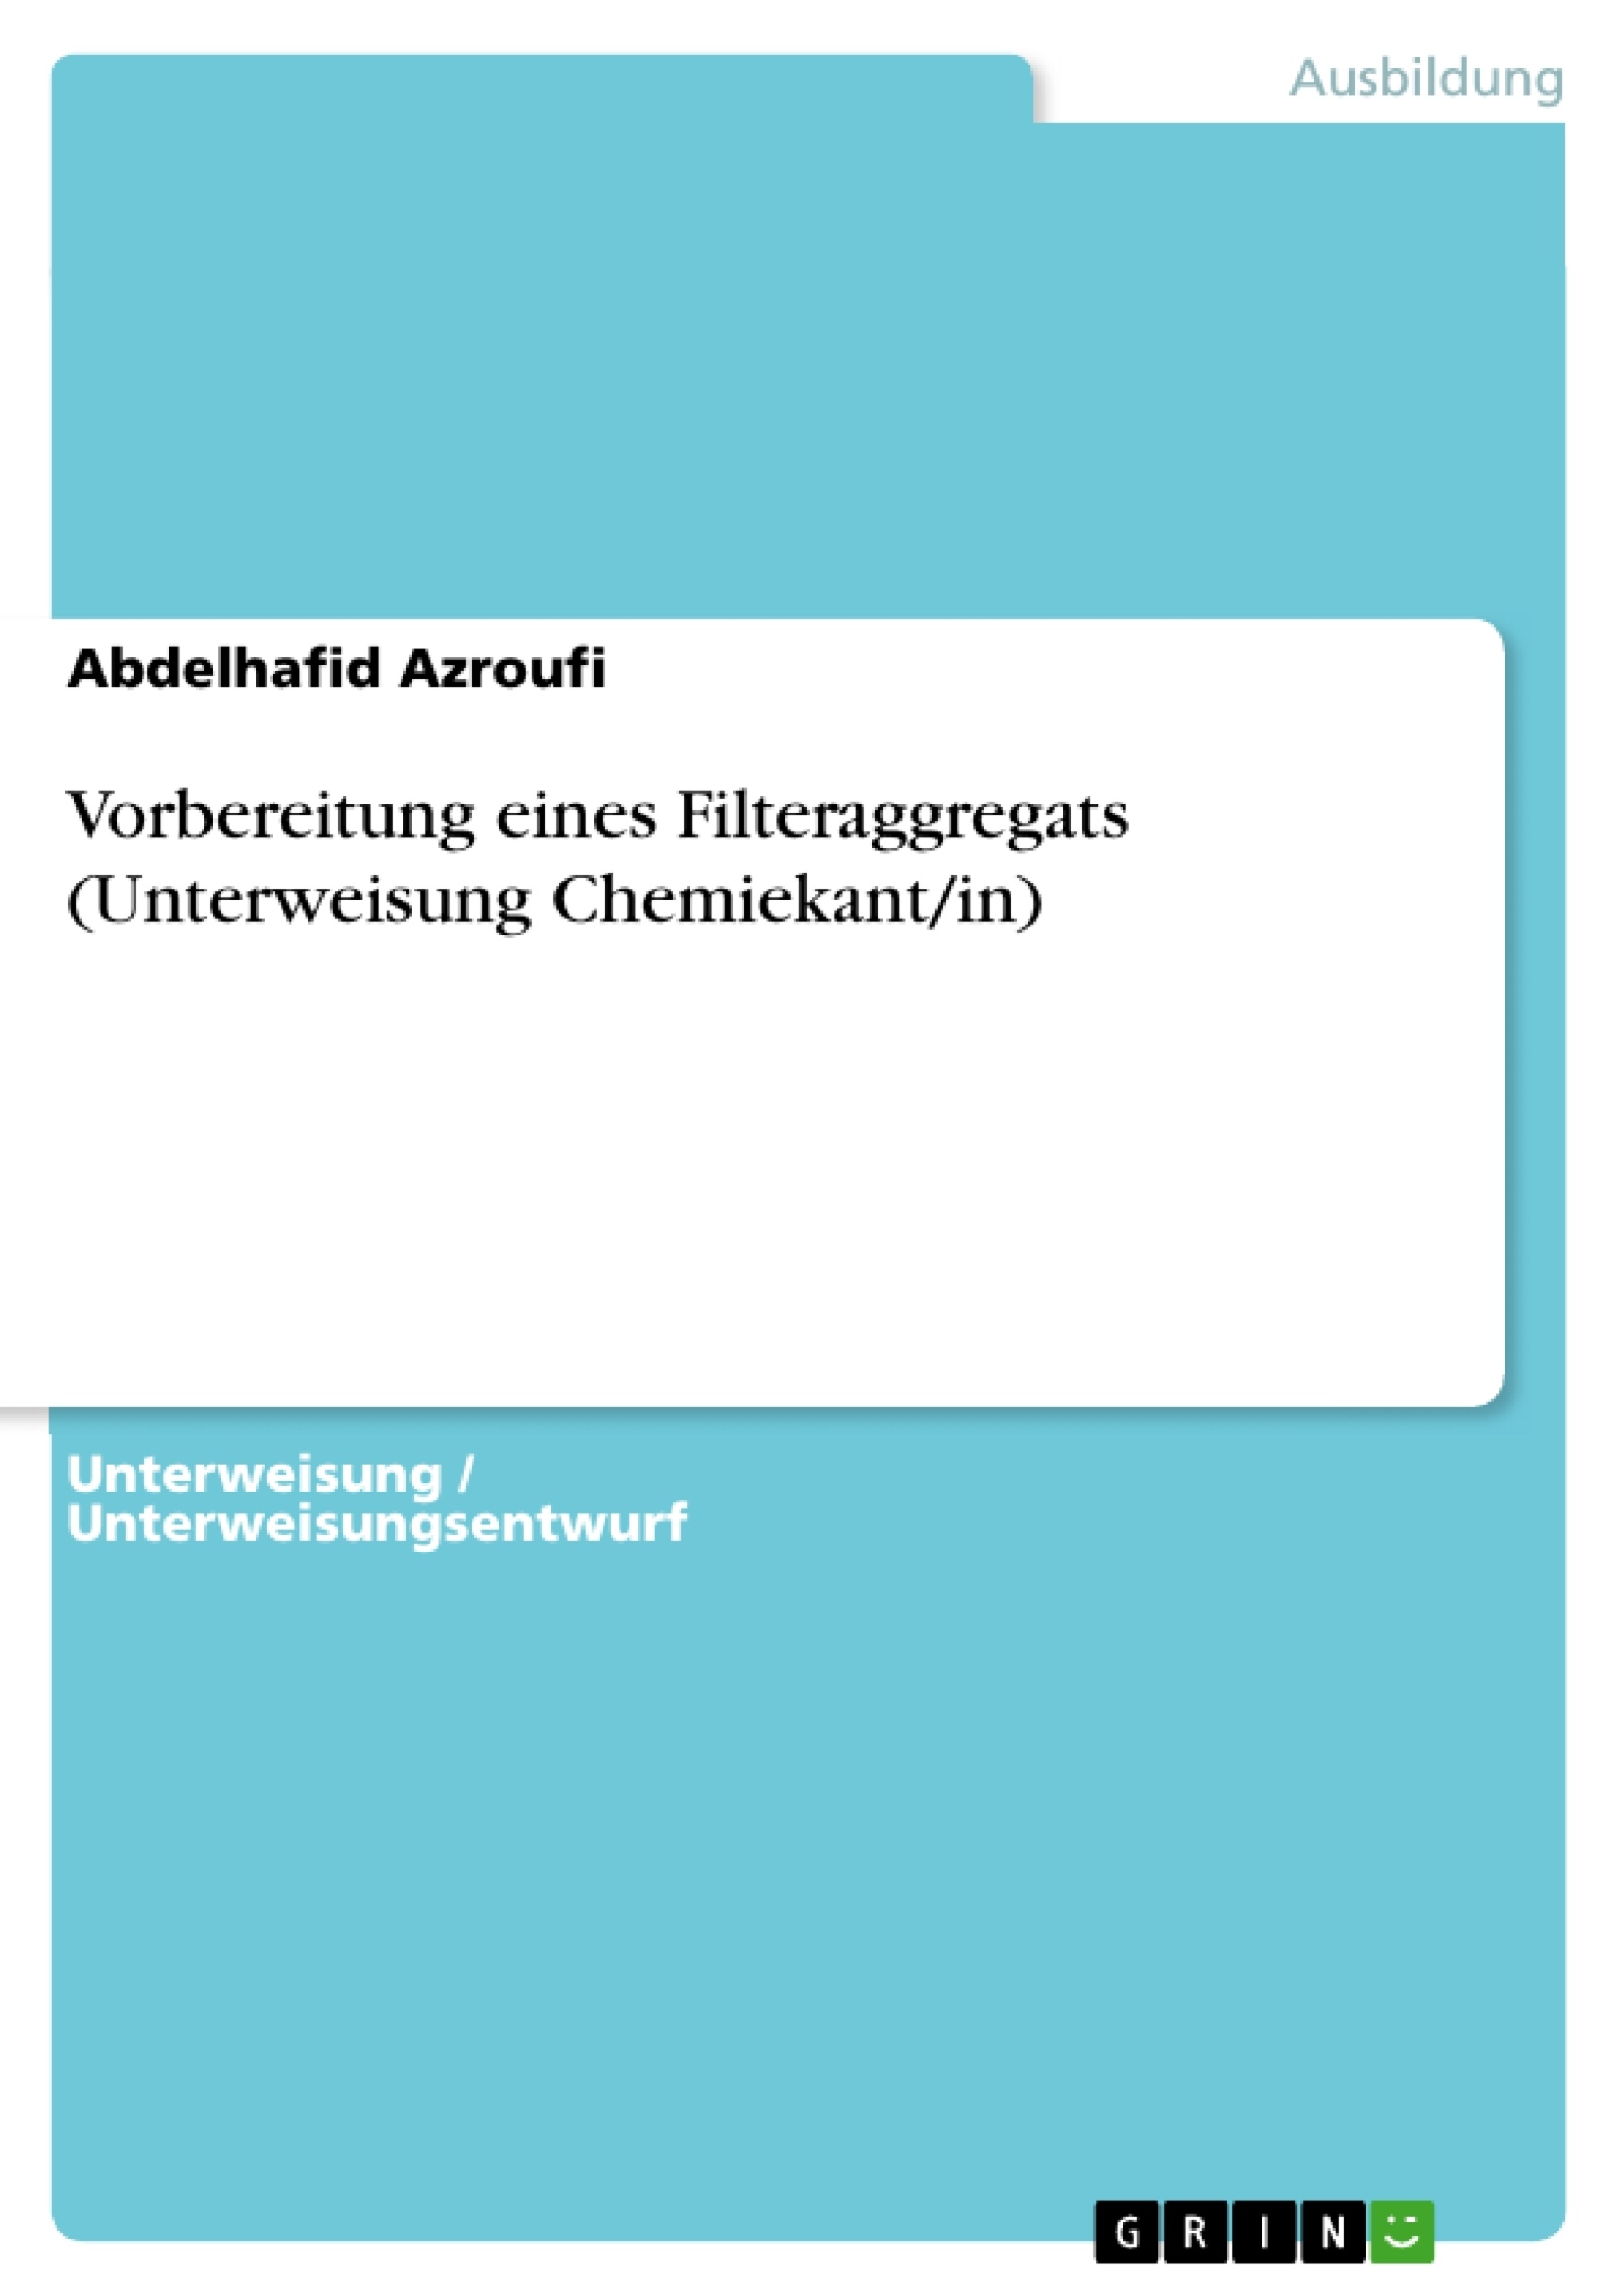 Título: Vorbereitung eines Filteraggregats (Unterweisung Chemiekant/in)